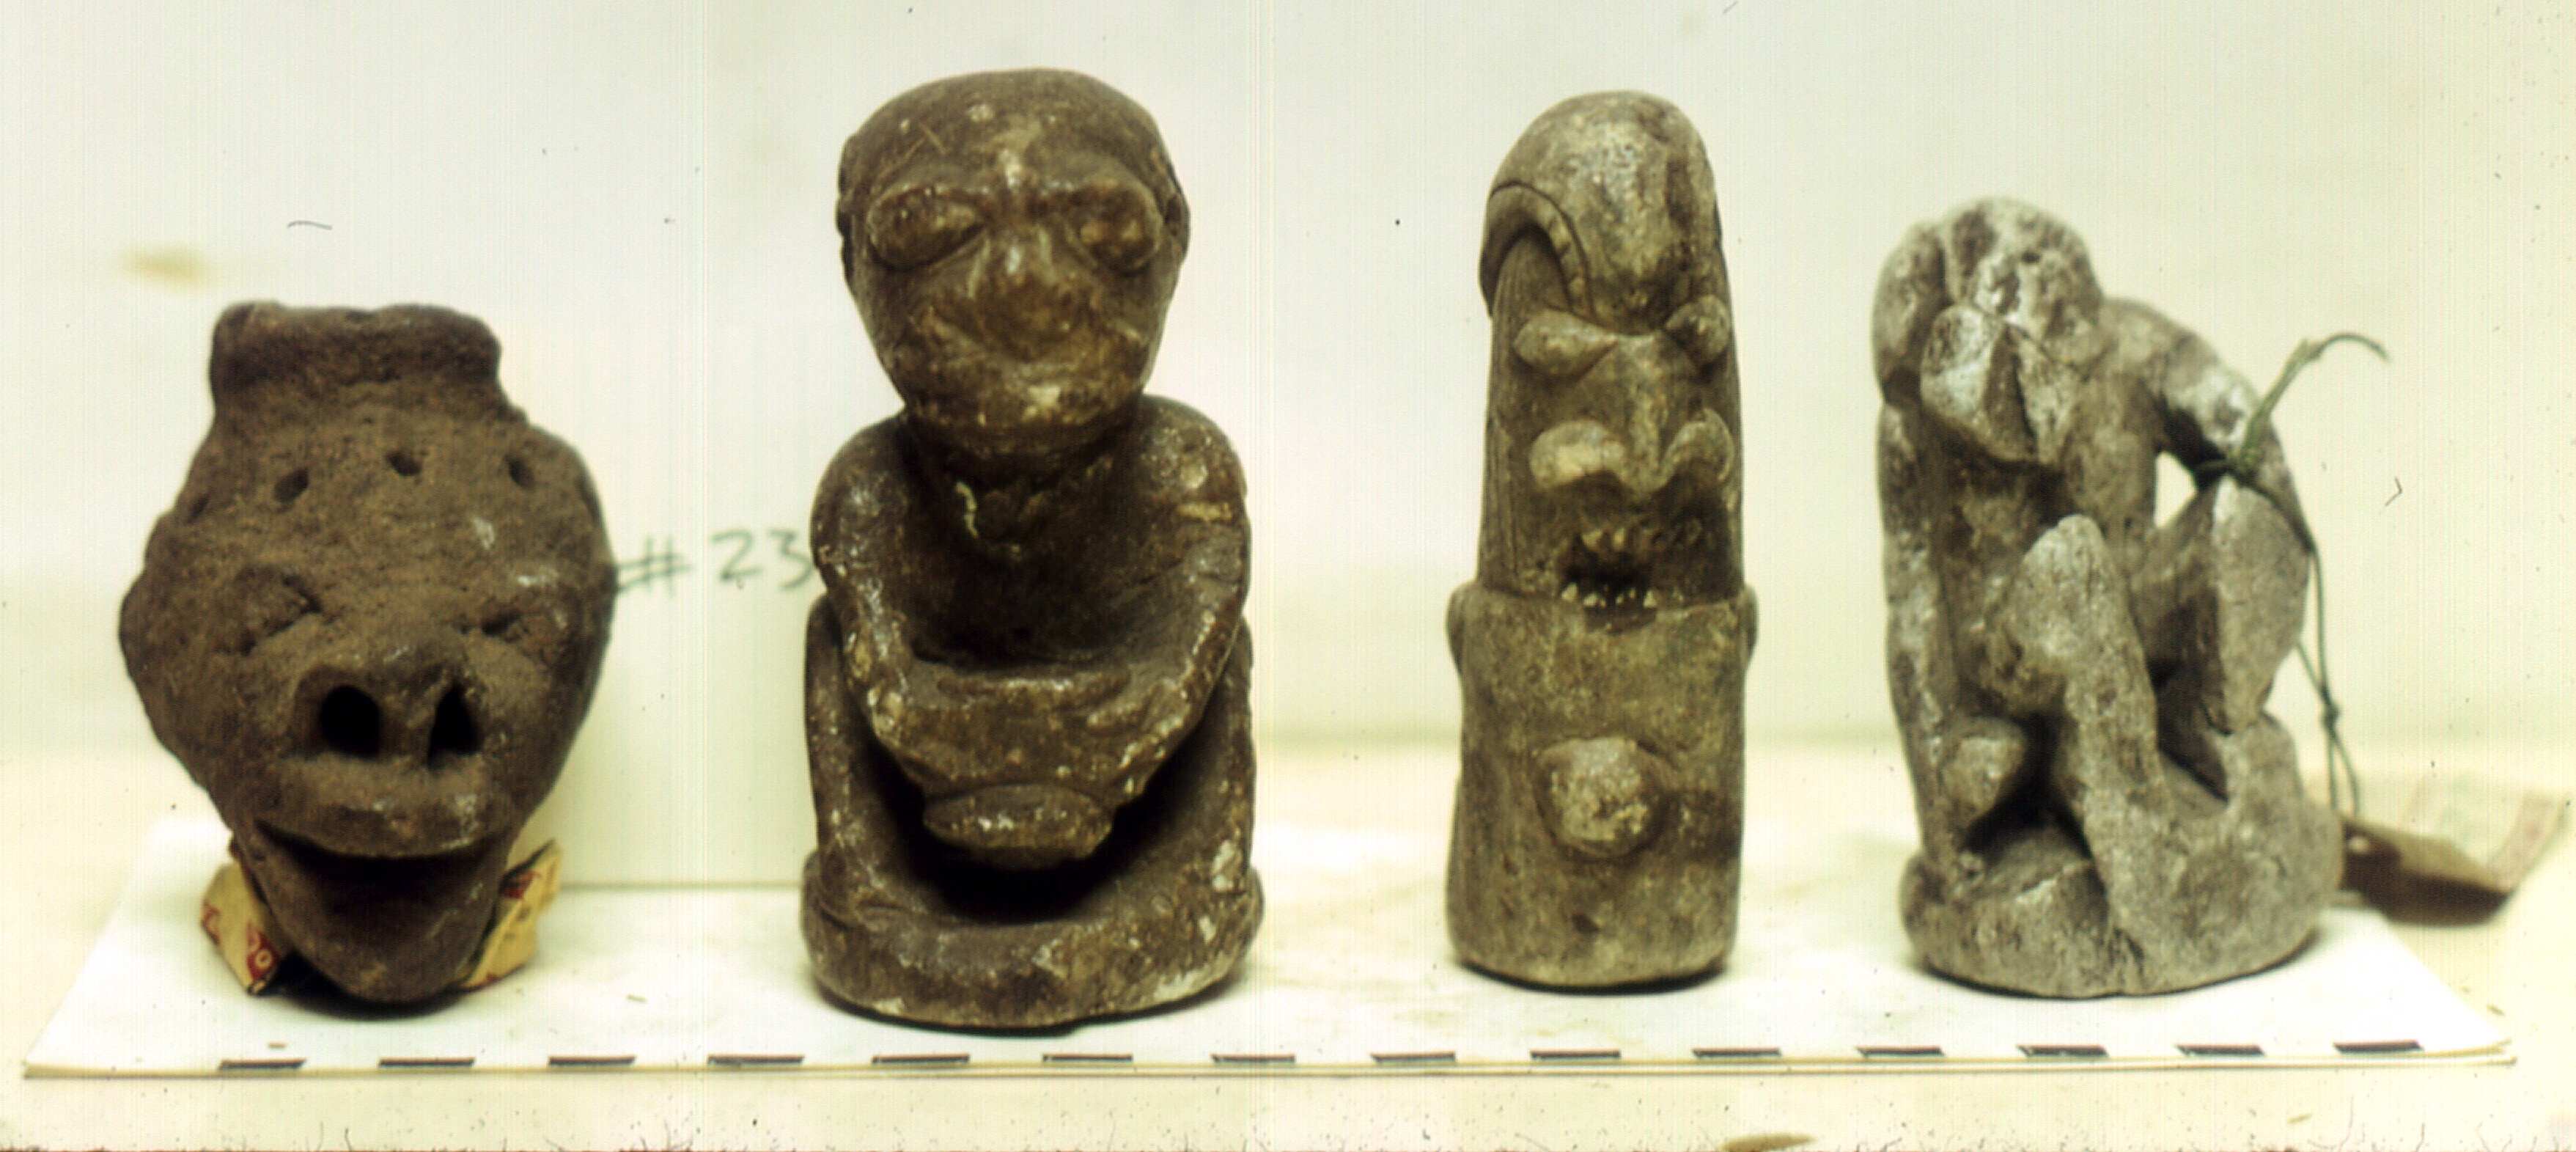 Nguồn gốc bí ẩn của những bức tượng Nomoli bí ẩn 4